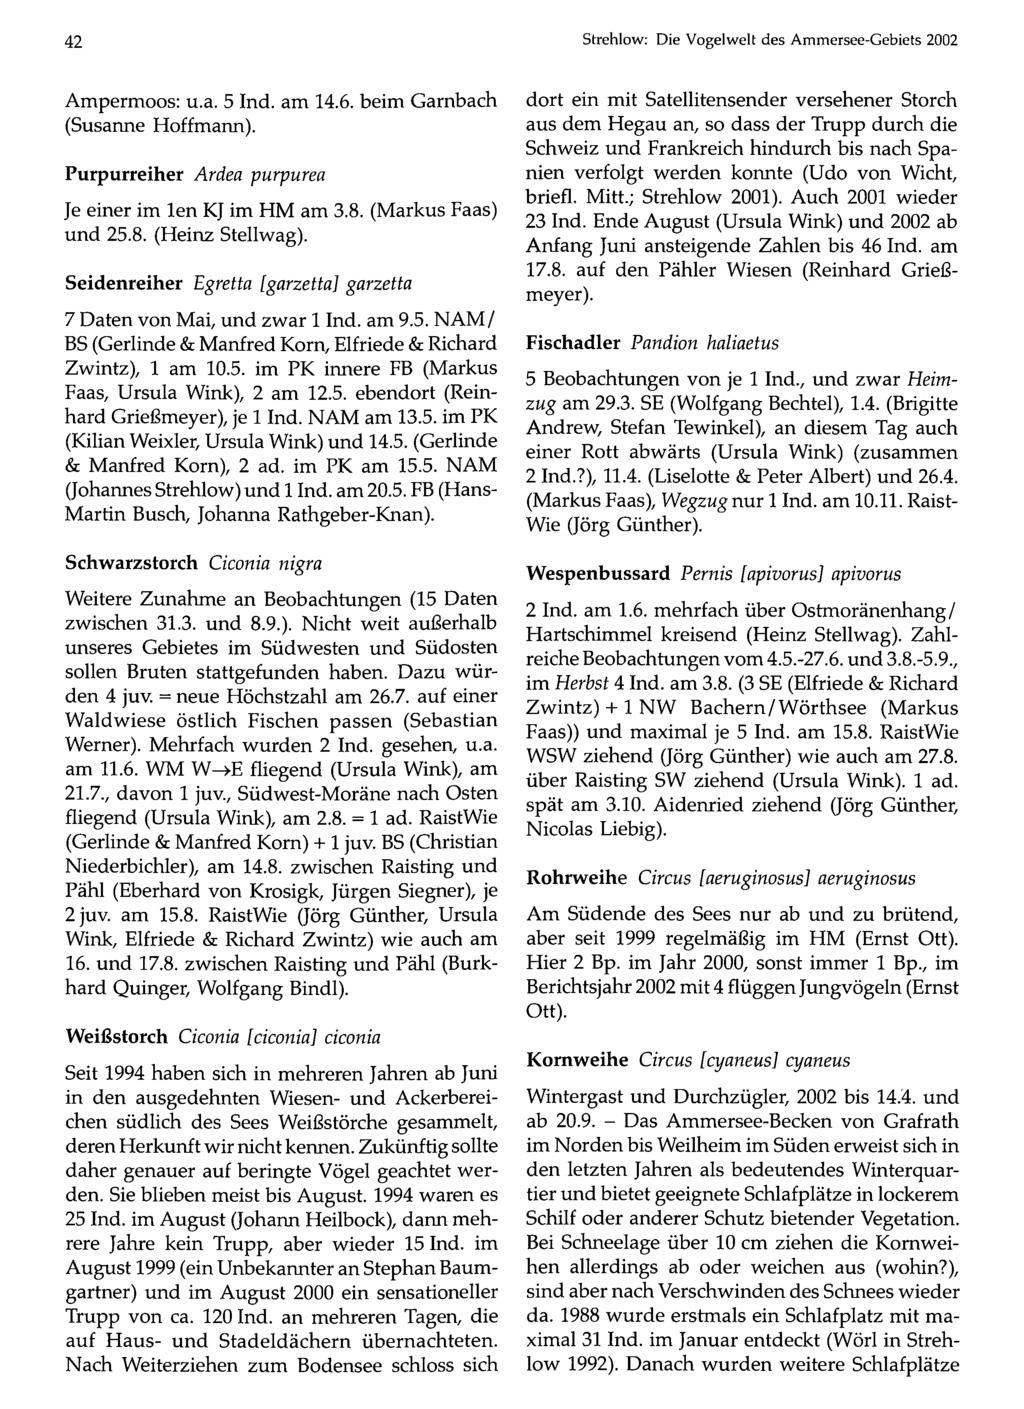 42 Ornithologische Gesellschaft Bayern, download unter Strehlow: www.biologiezentrum.at Die Vogelwelt des Ammersee-Gebiets 2002 Ampermoos: u.a. 5 Ind. am 14.6. beim Garnbach (Susanne Hoffmann).